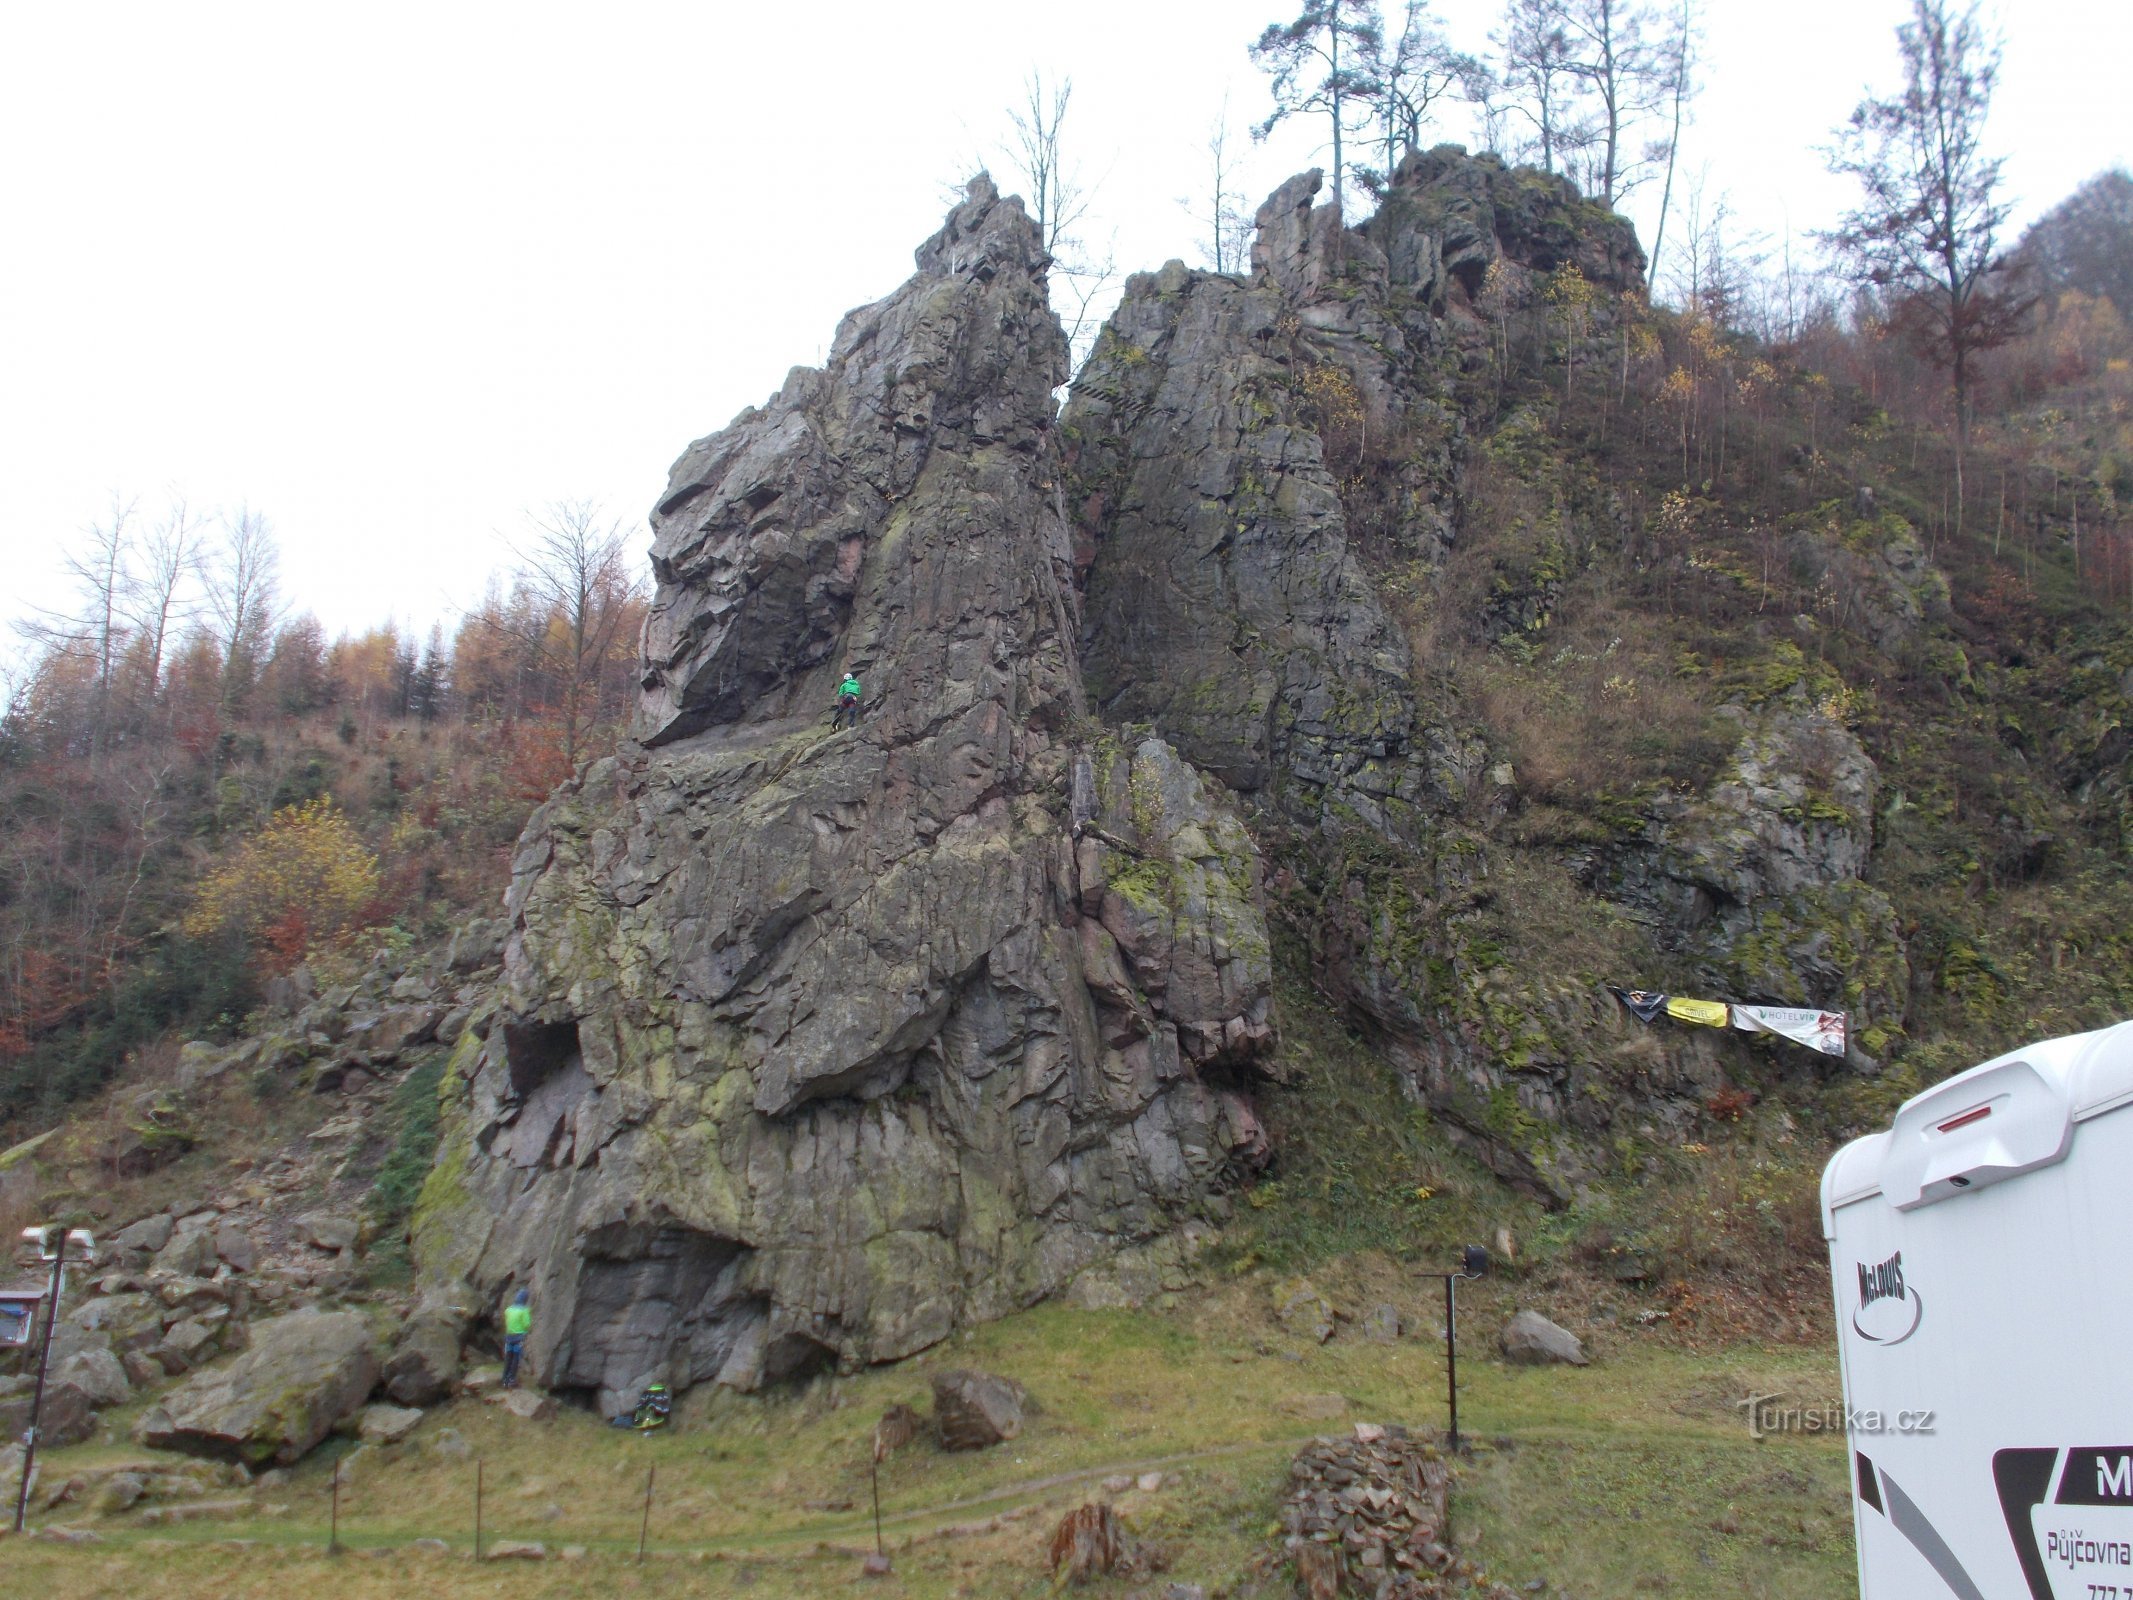 Einer der Klettersteige bei Svratka